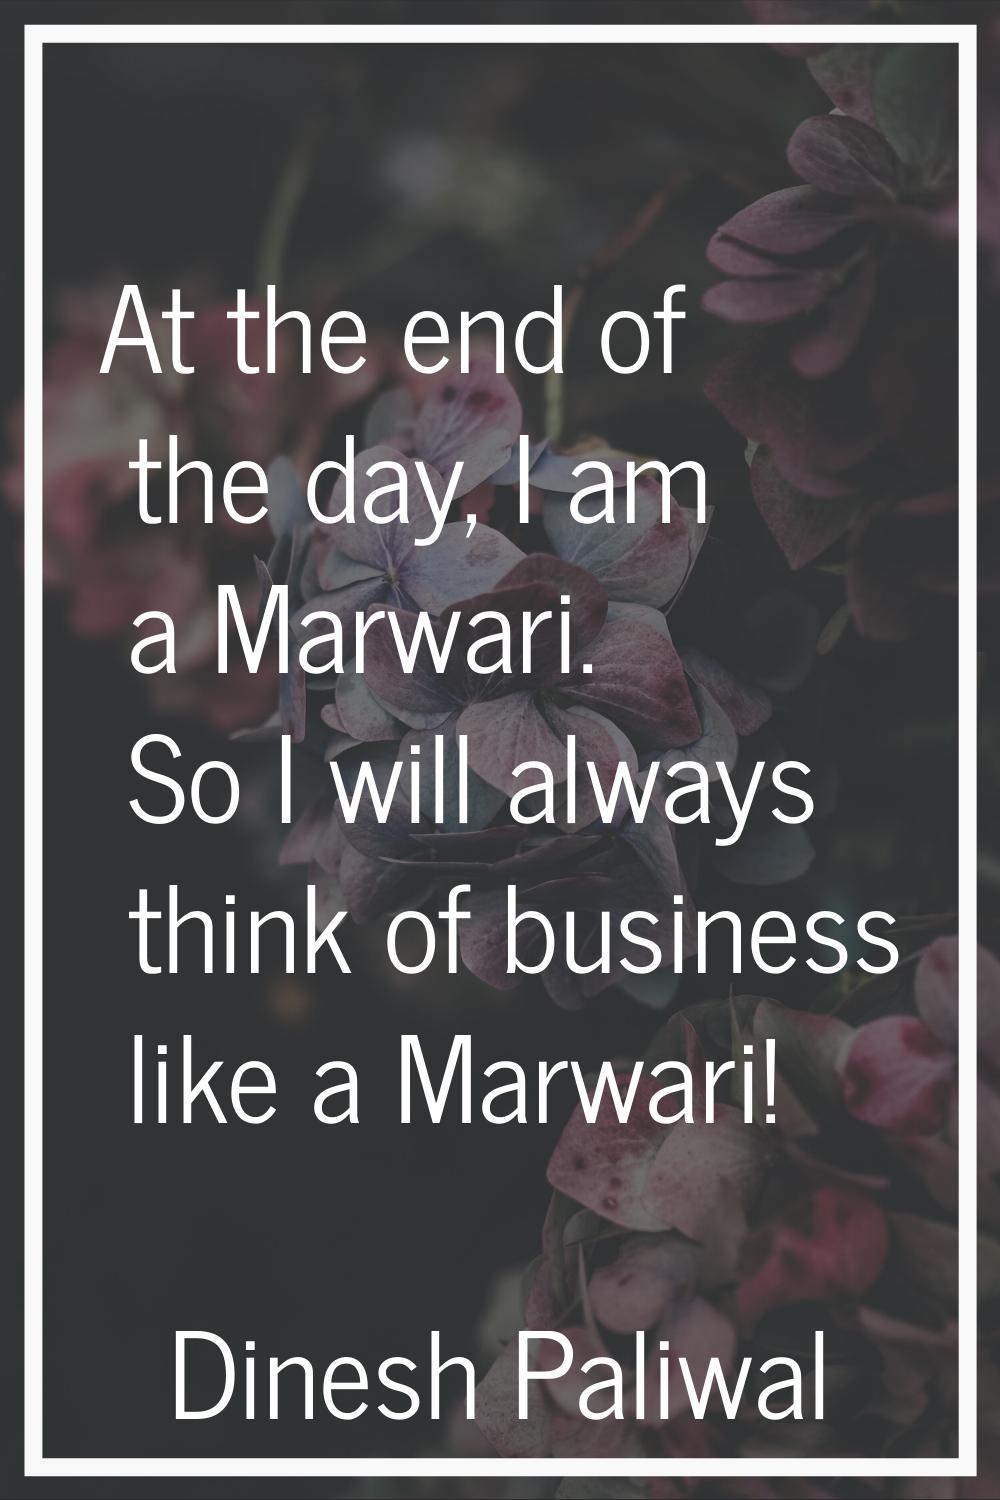 At the end of the day, I am a Marwari. So I will always think of business like a Marwari!